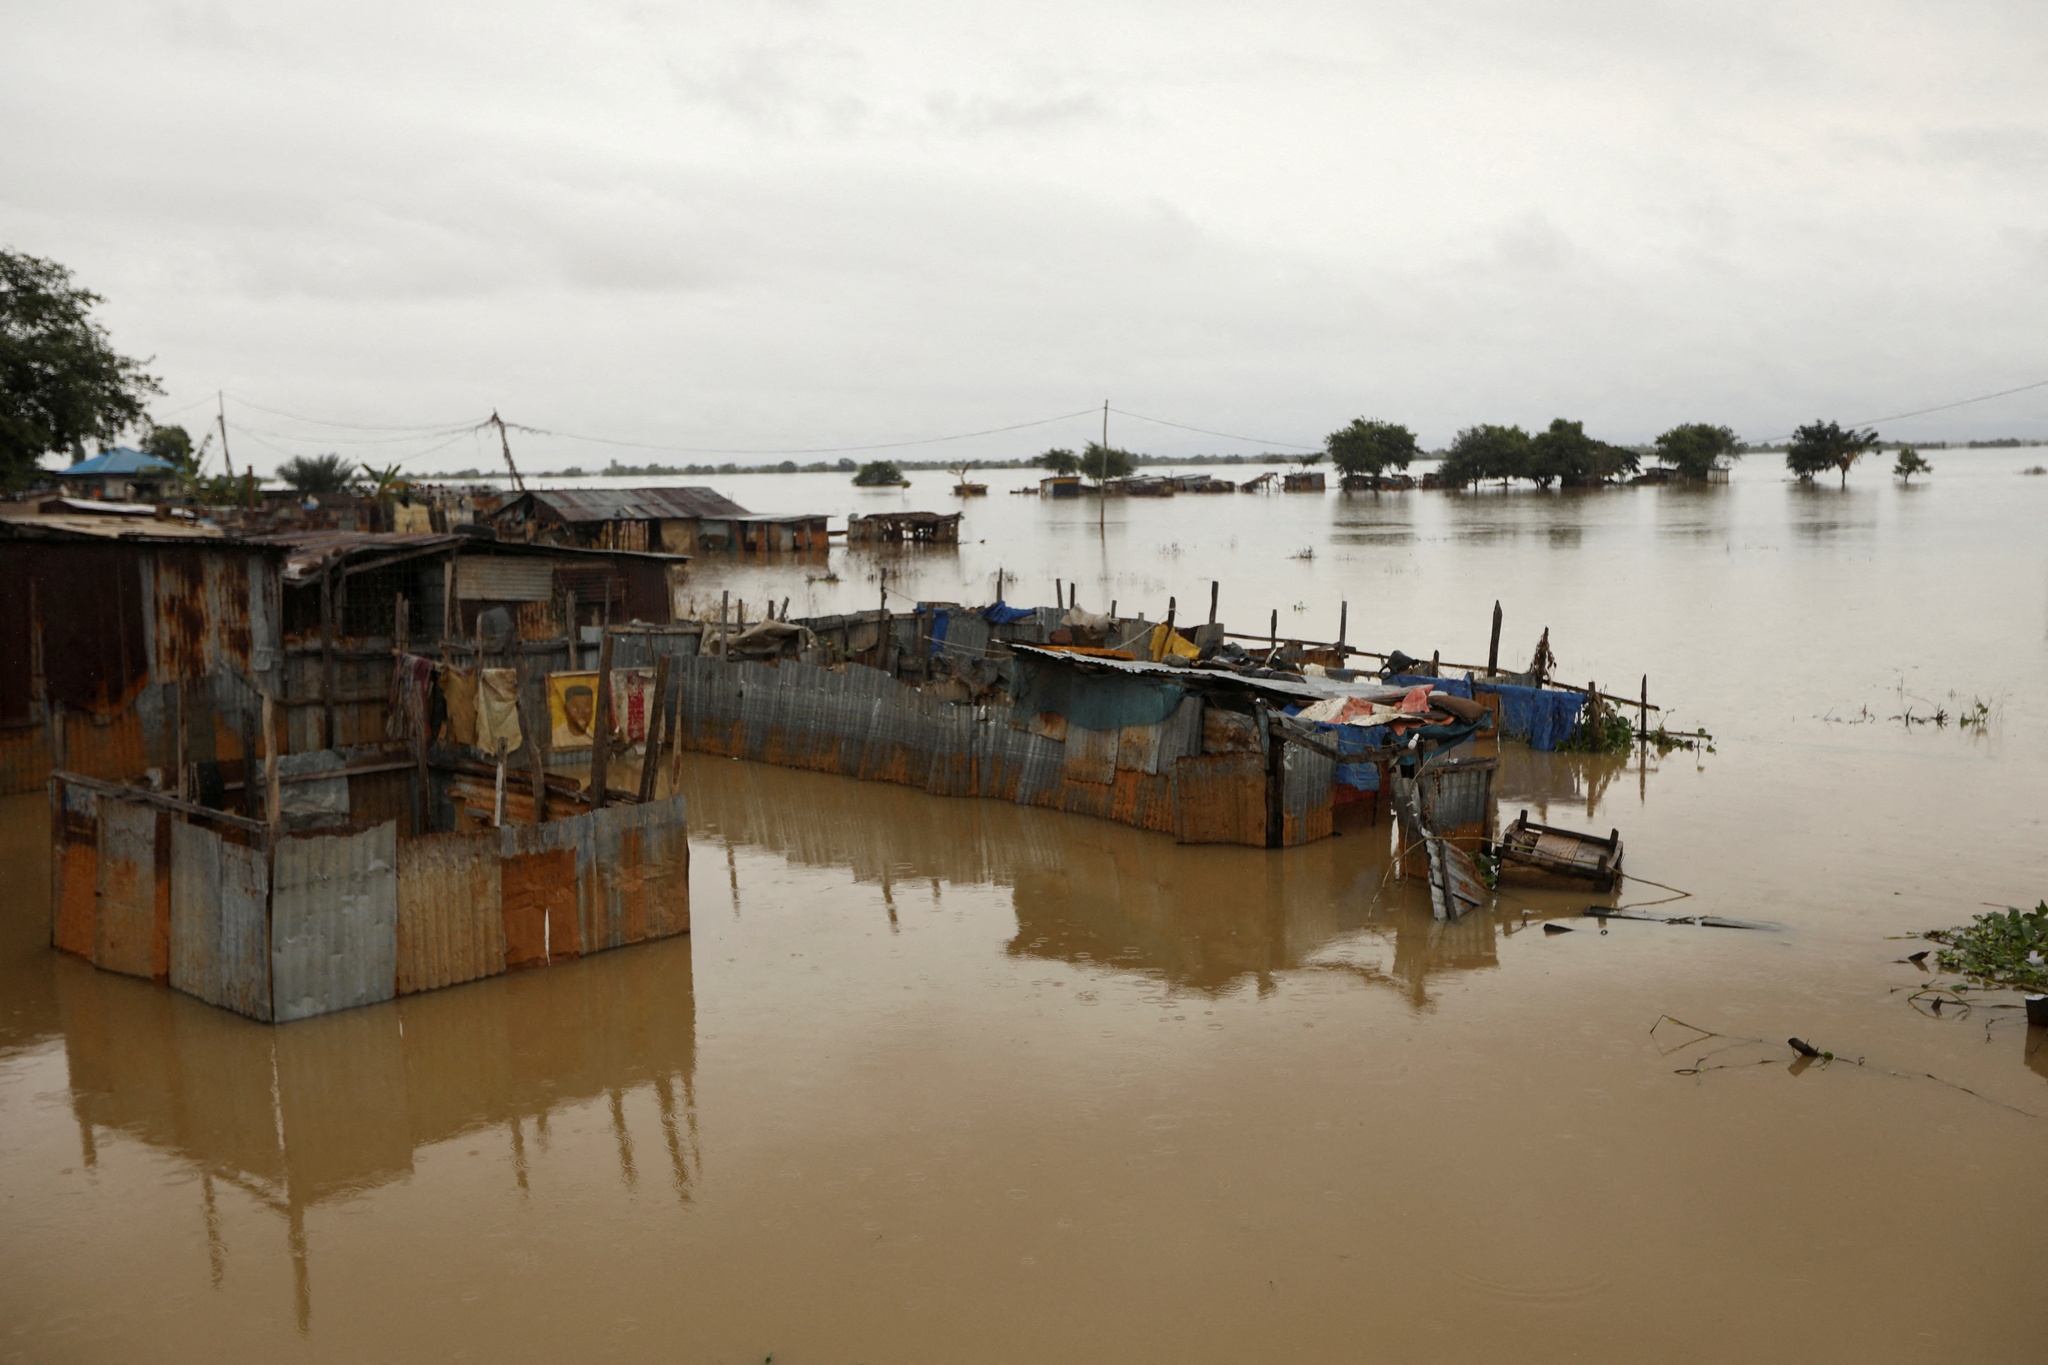 Lũ lụt tàn phá Nigeria, hơn 600 người thiệt mạng - ảnh 1